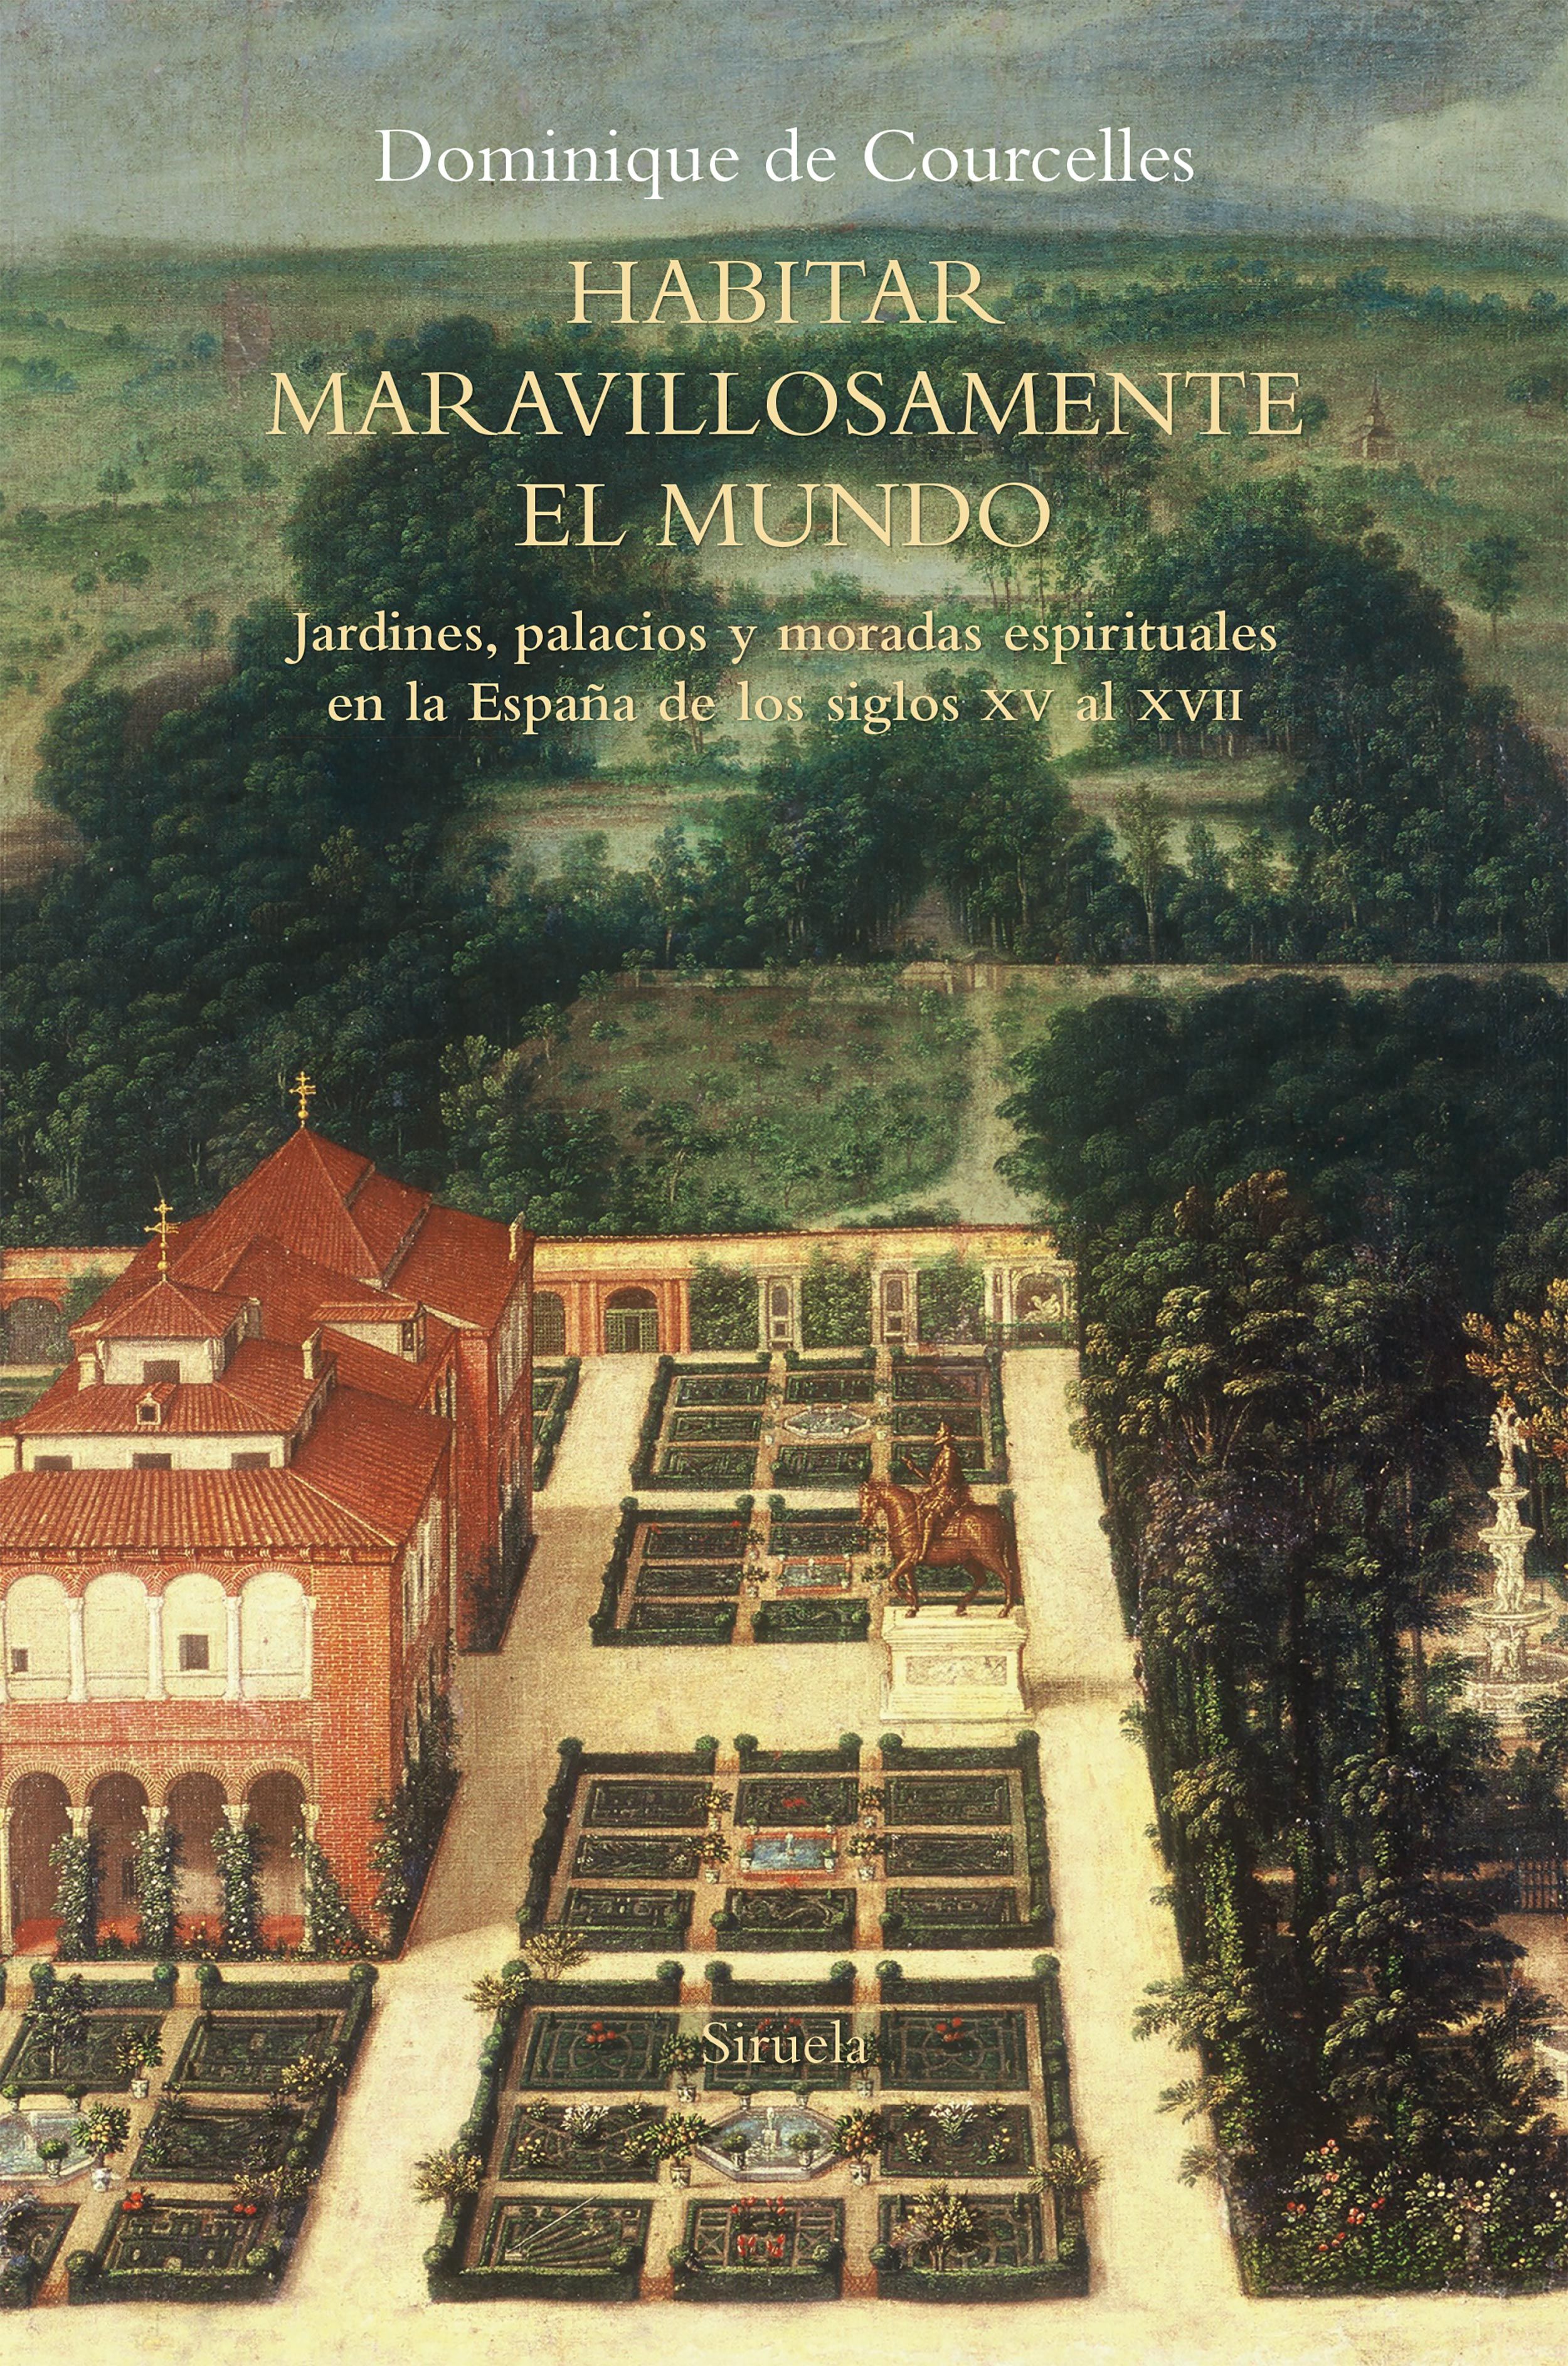 HABITAR MARAVILLOSAMENTE EL MUNDO. JARDINES, PALACIOS Y MORADAS ESPIRITUALES EN LA ESPAÑA DE LOS SIGLOS XV AL XVII